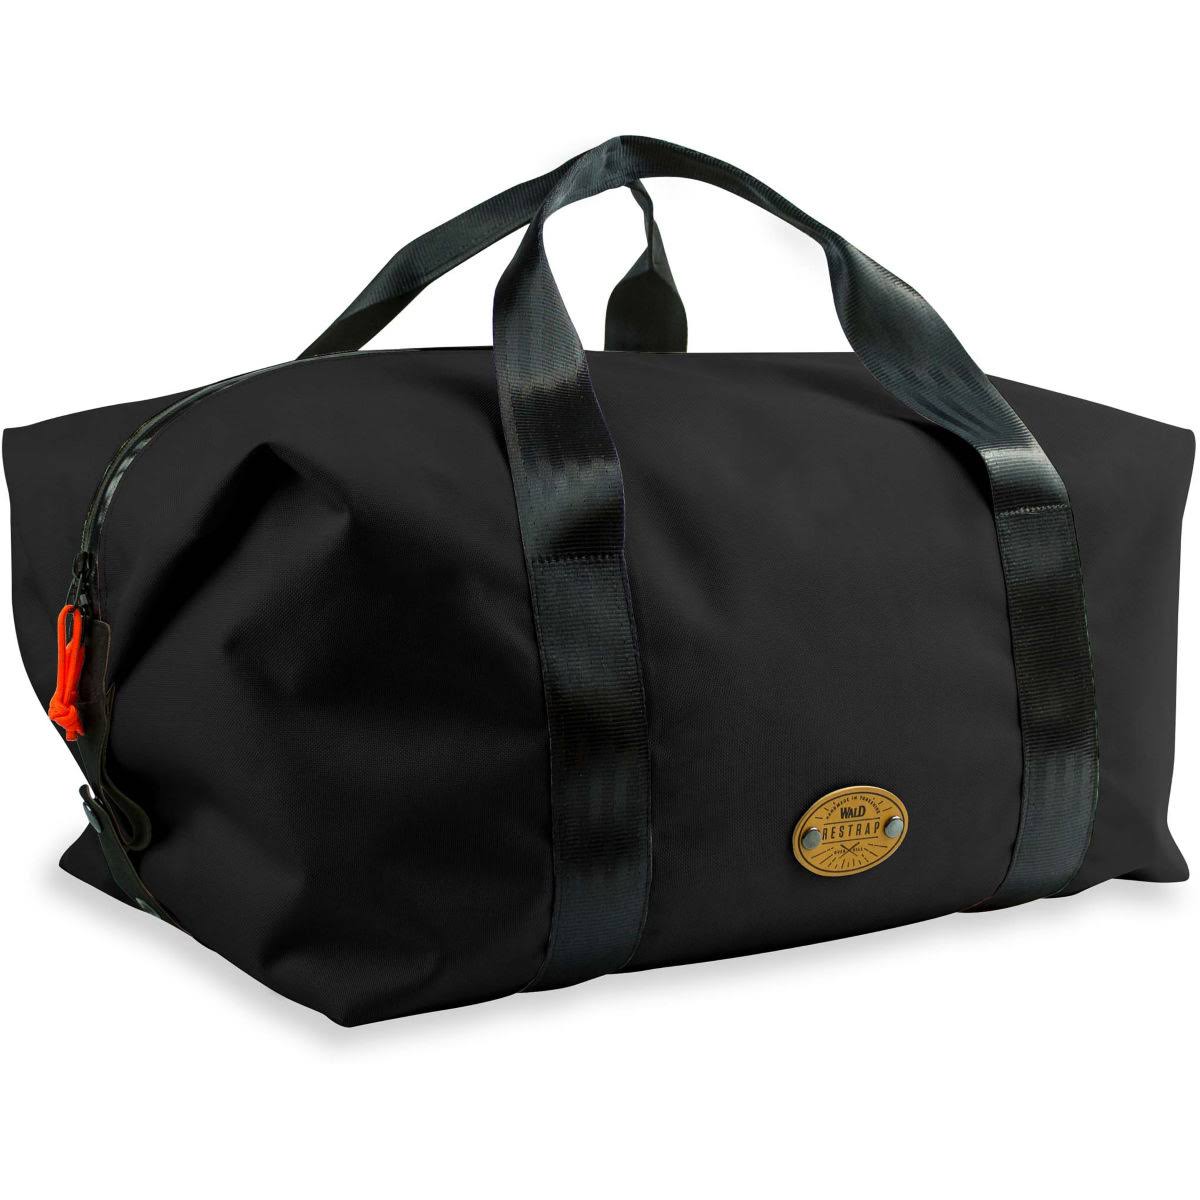 Restrap Wald Basket Bag Large 32.5 litres Black Pannier Bags - WGL-2-s